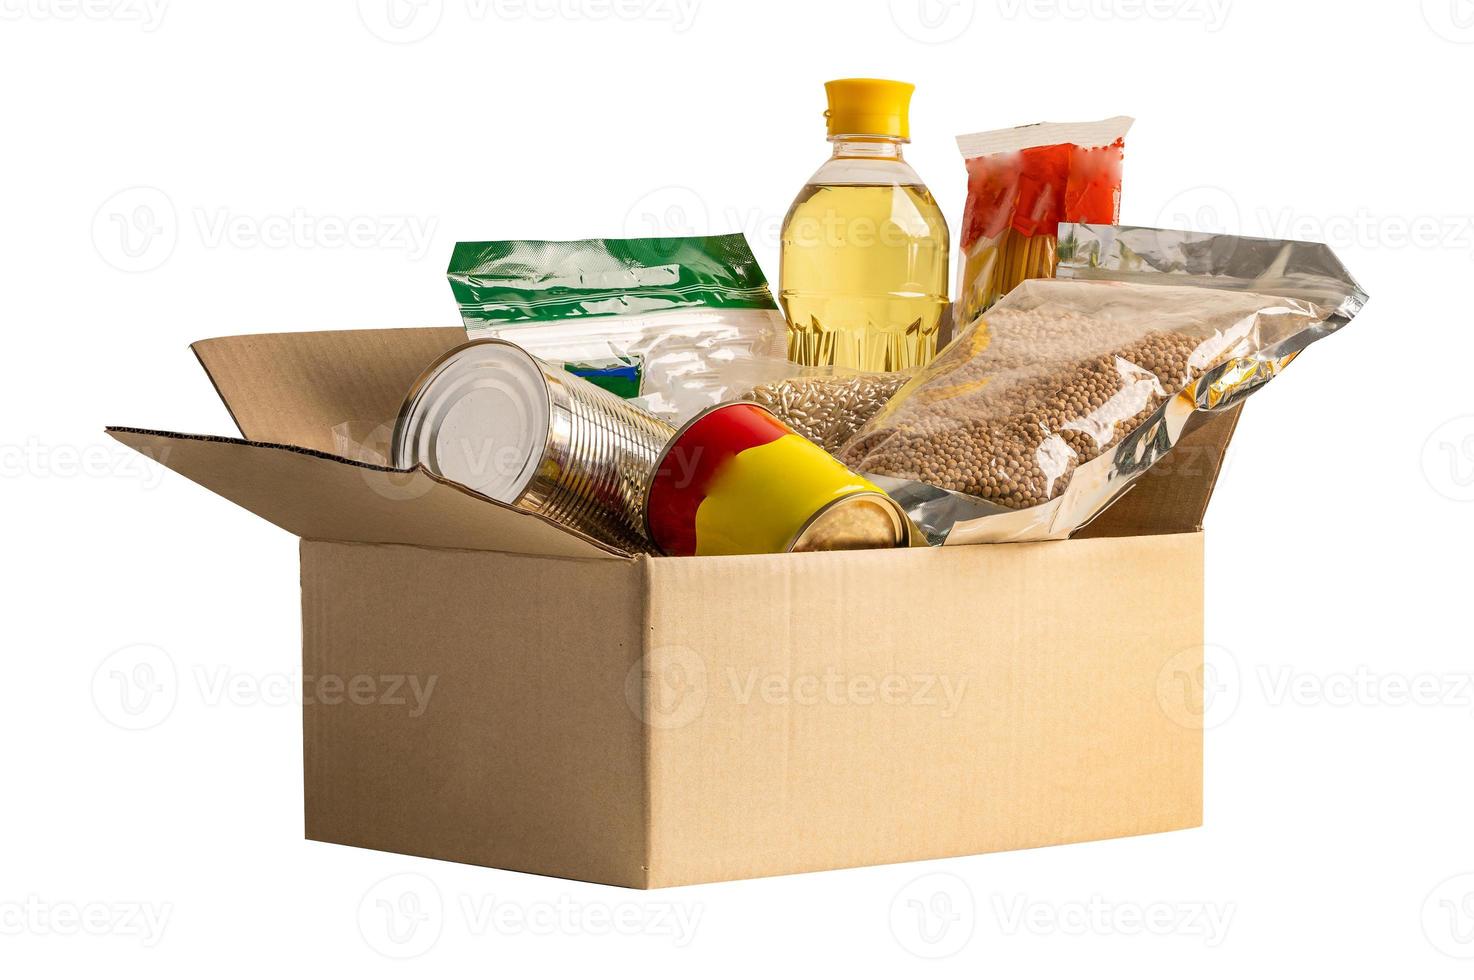 livsmedel för donation isolerat på vit bakgrund med klippning väg, lagring och leverans. olika mat, pasta, matlagning olja och konserverad mat i kartong låda. foto